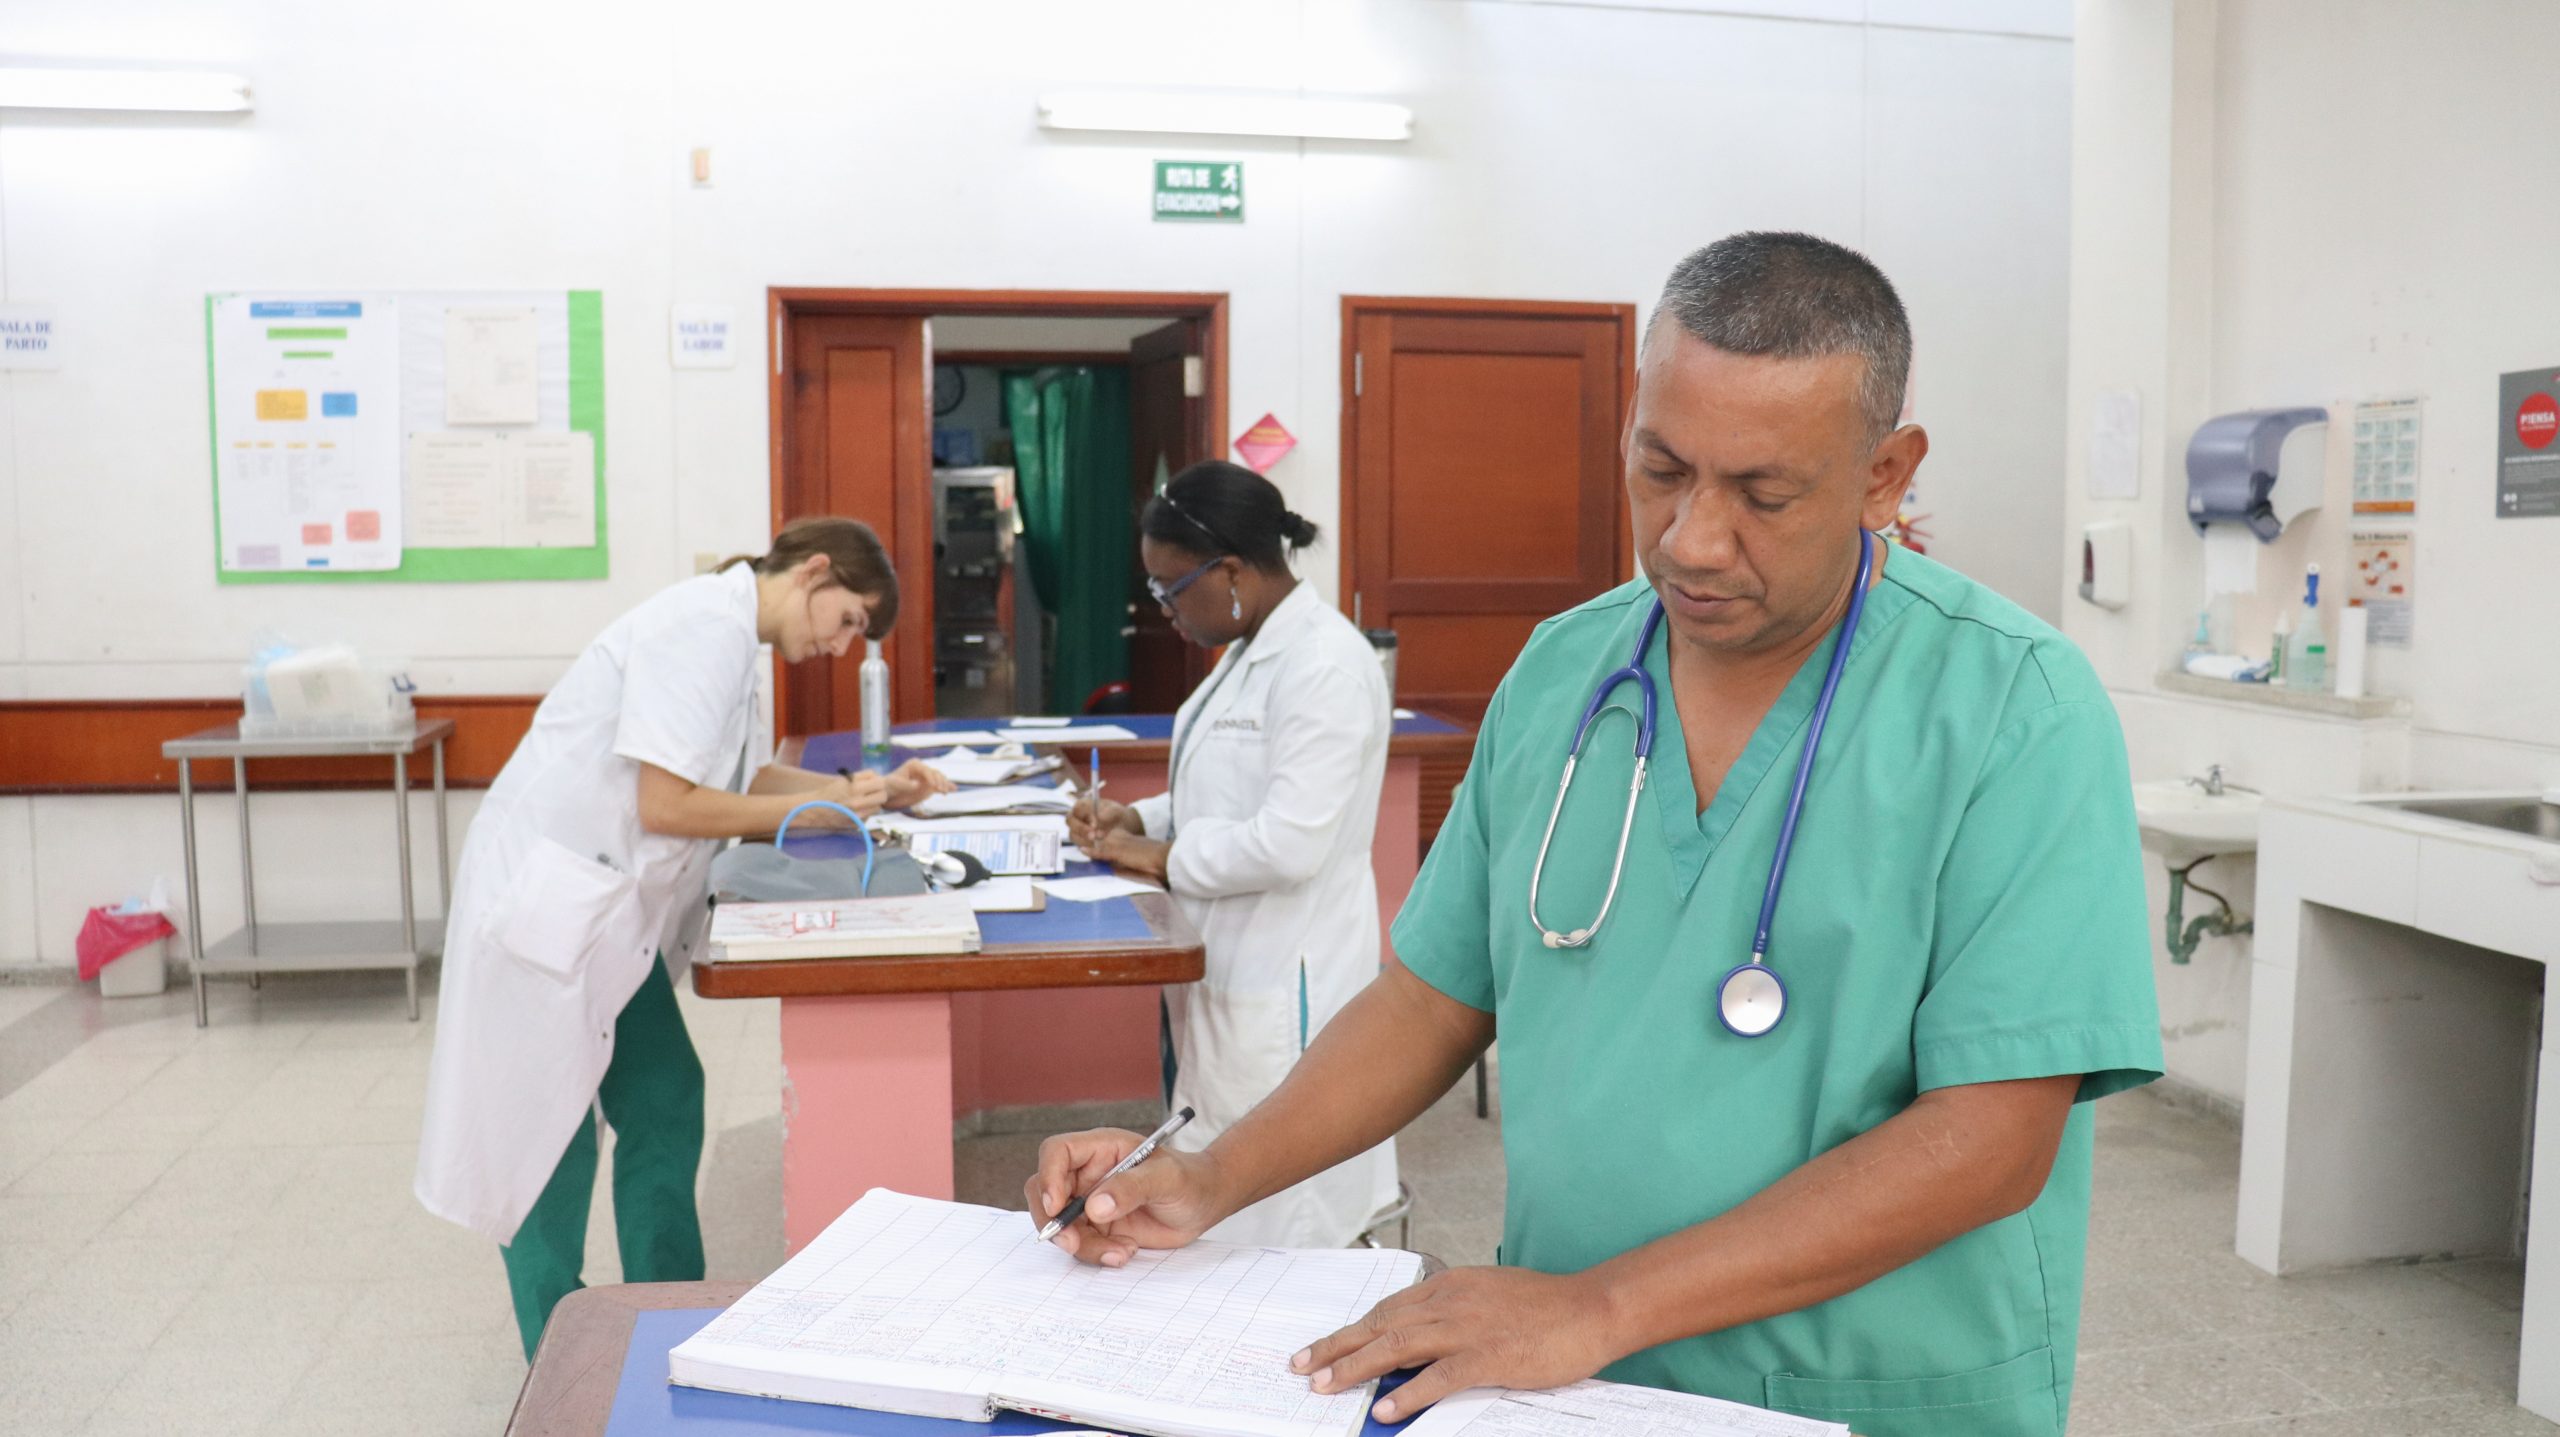 fotos-enfermera-enfermeria-medicos-sin-fronteras-msf-mundo-09